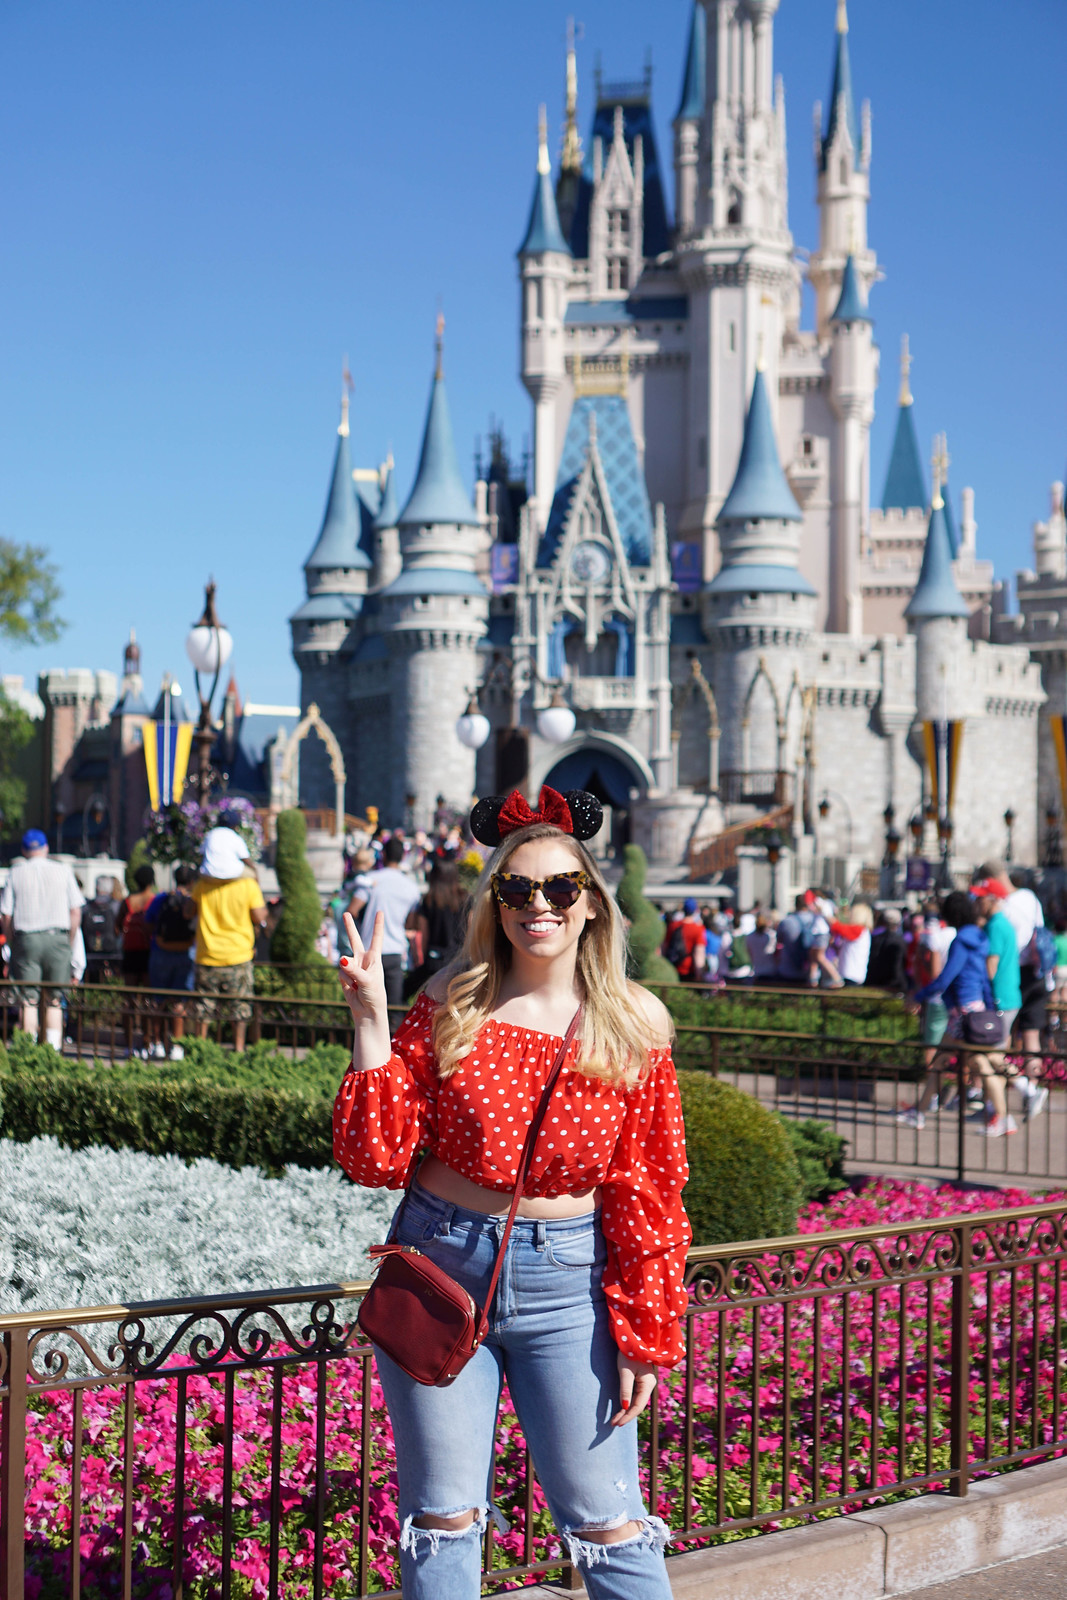 Magic Kingdom Cinderellas Castle Orlando Florida